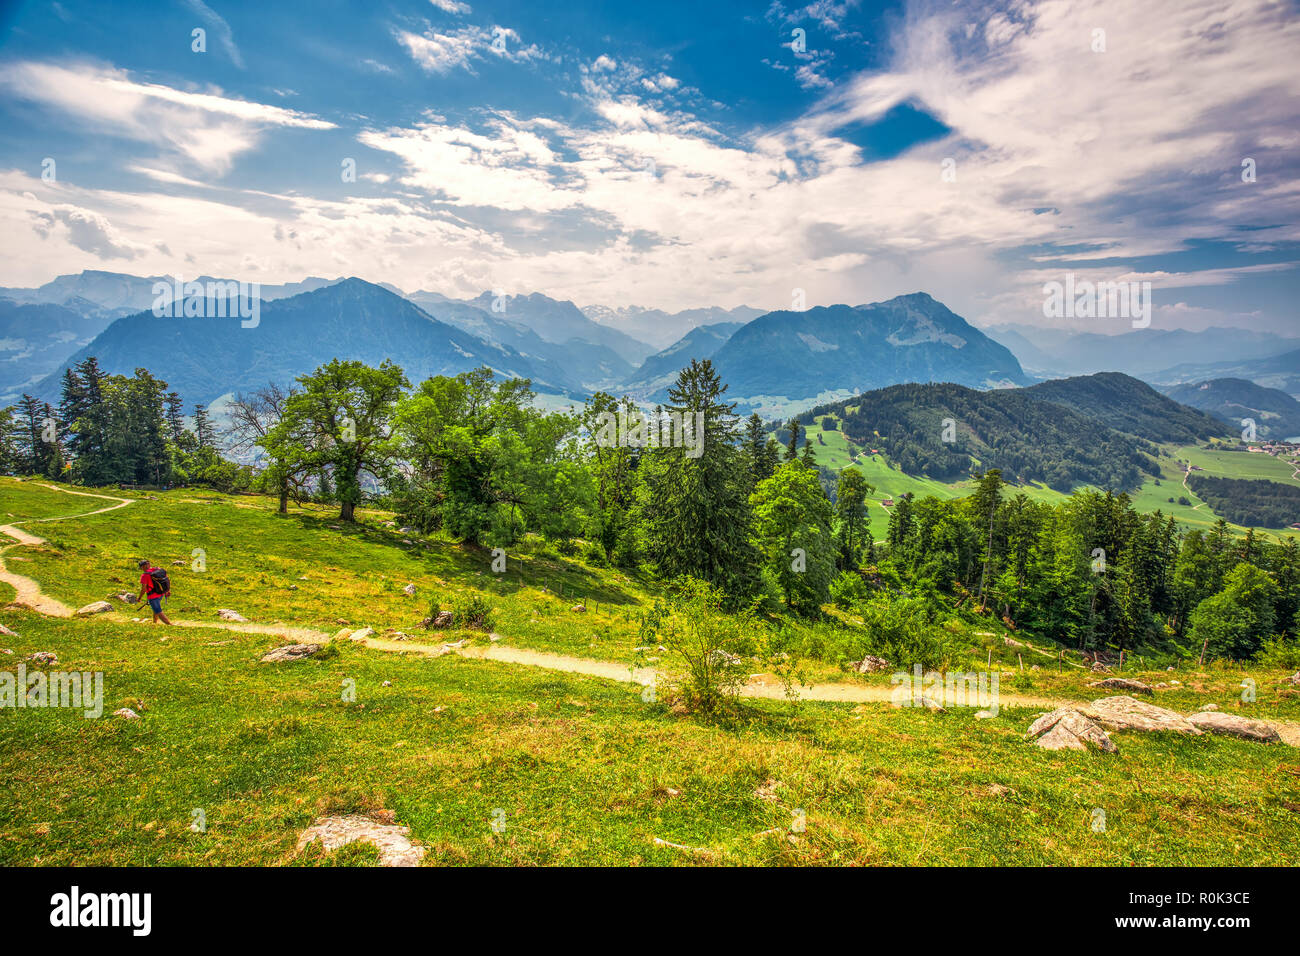 Alpes Suisses près de Burgenstock avec la vue sur le lac de Lucerne et Pilatus mountain, Suisse, Europe. Banque D'Images